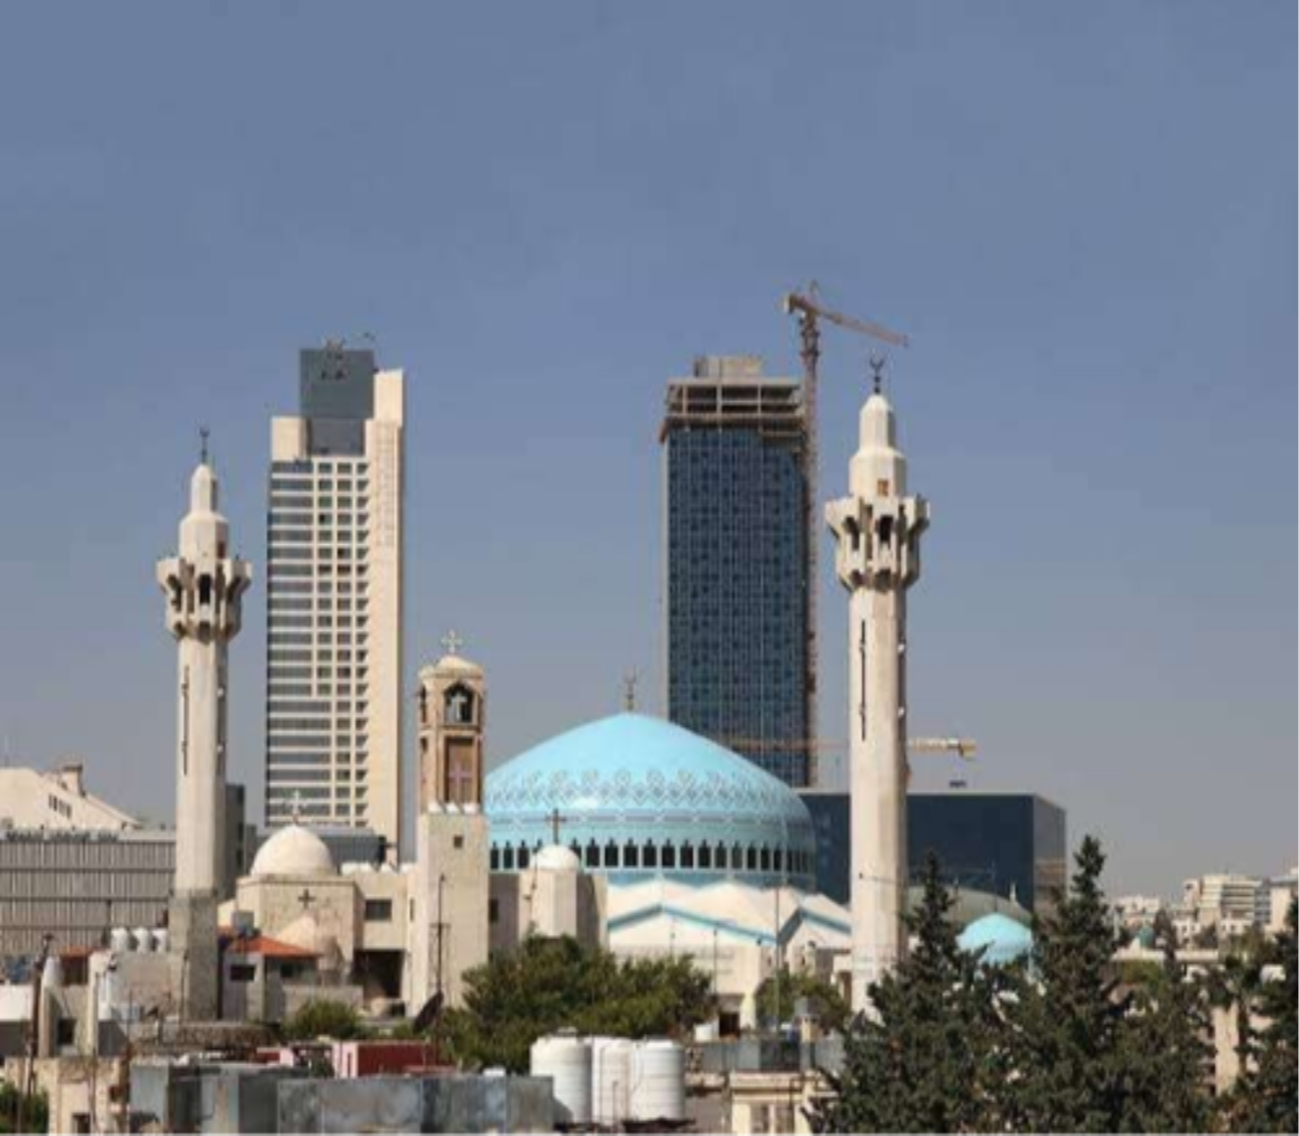 Keindahan suatu kota bisa tampak sari arsitektur masjid yang elok. (Ilustrasi)